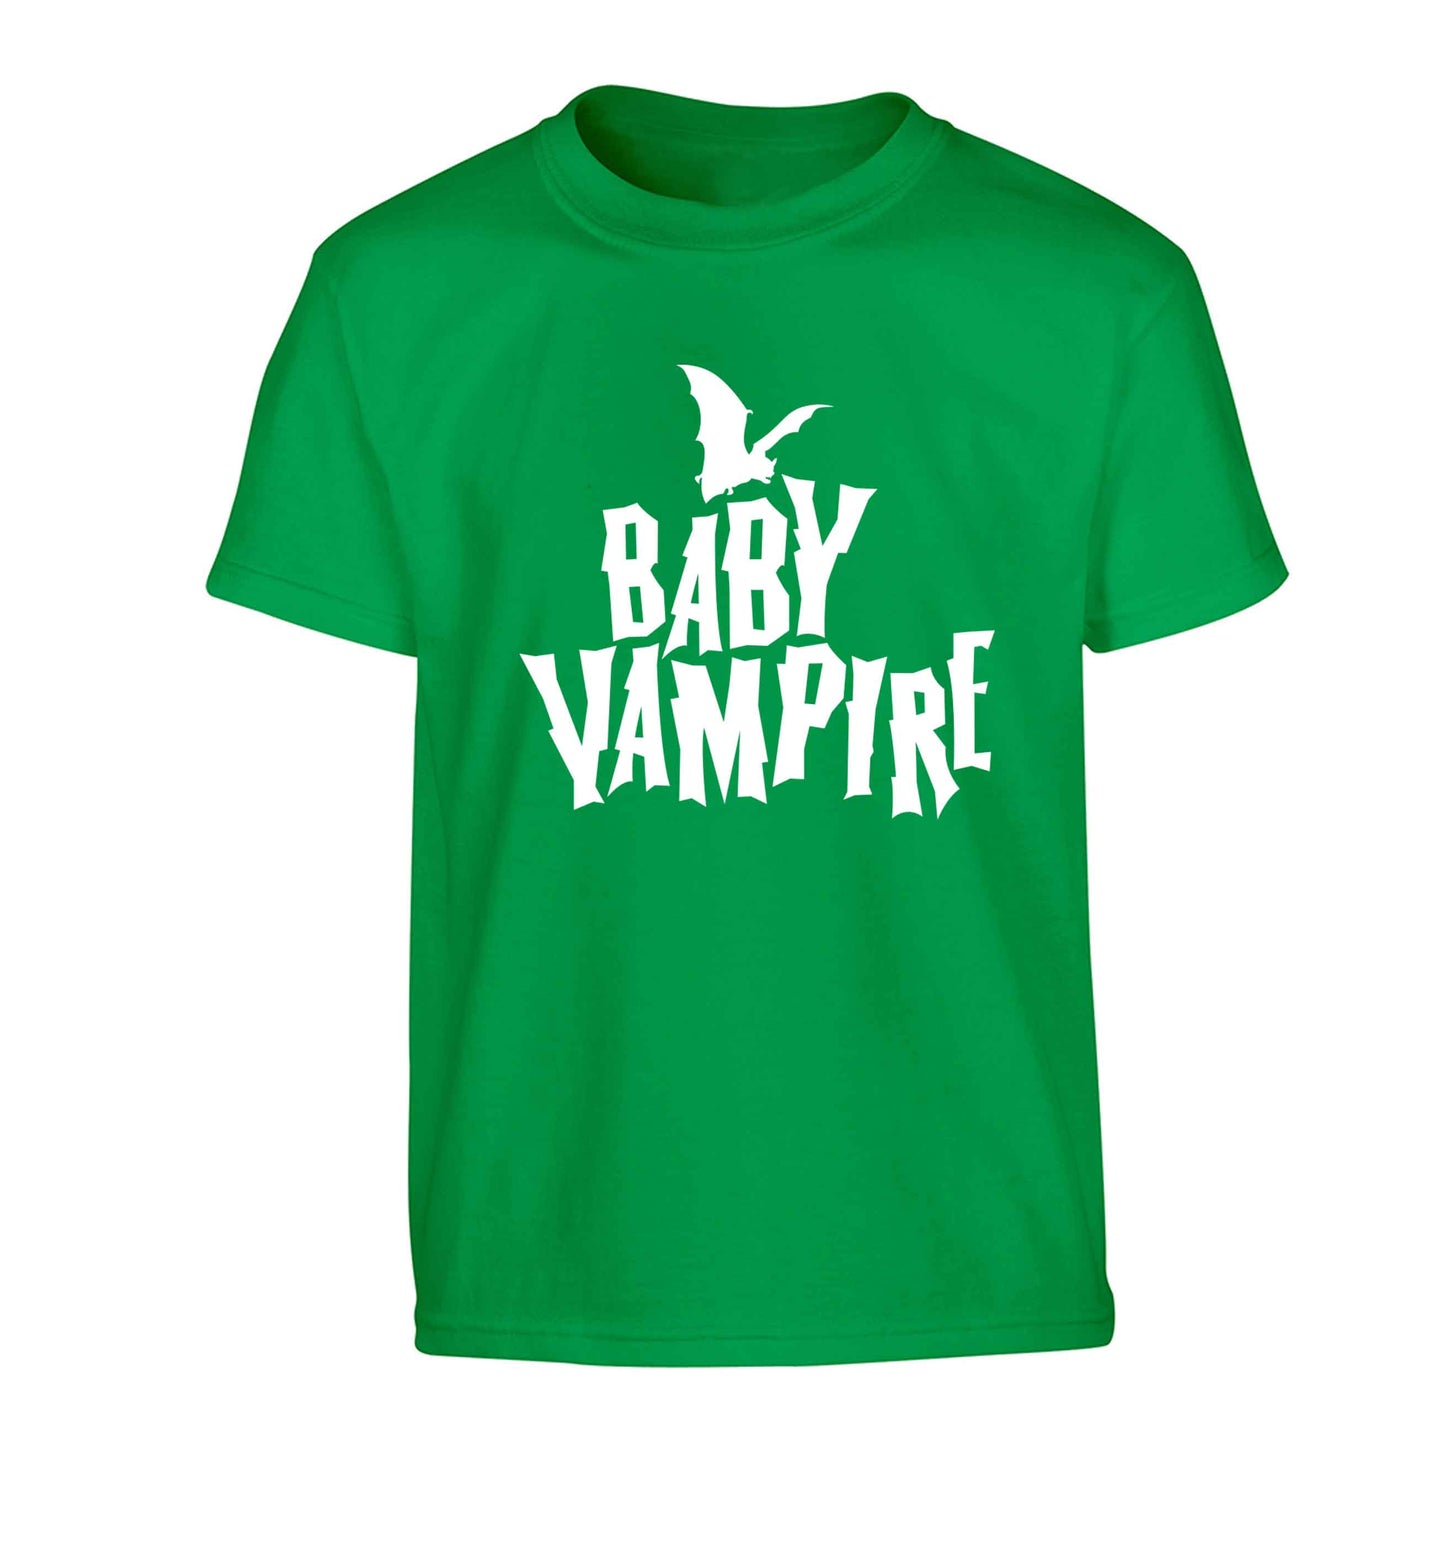 Baby vampire Children's green Tshirt 12-13 Years